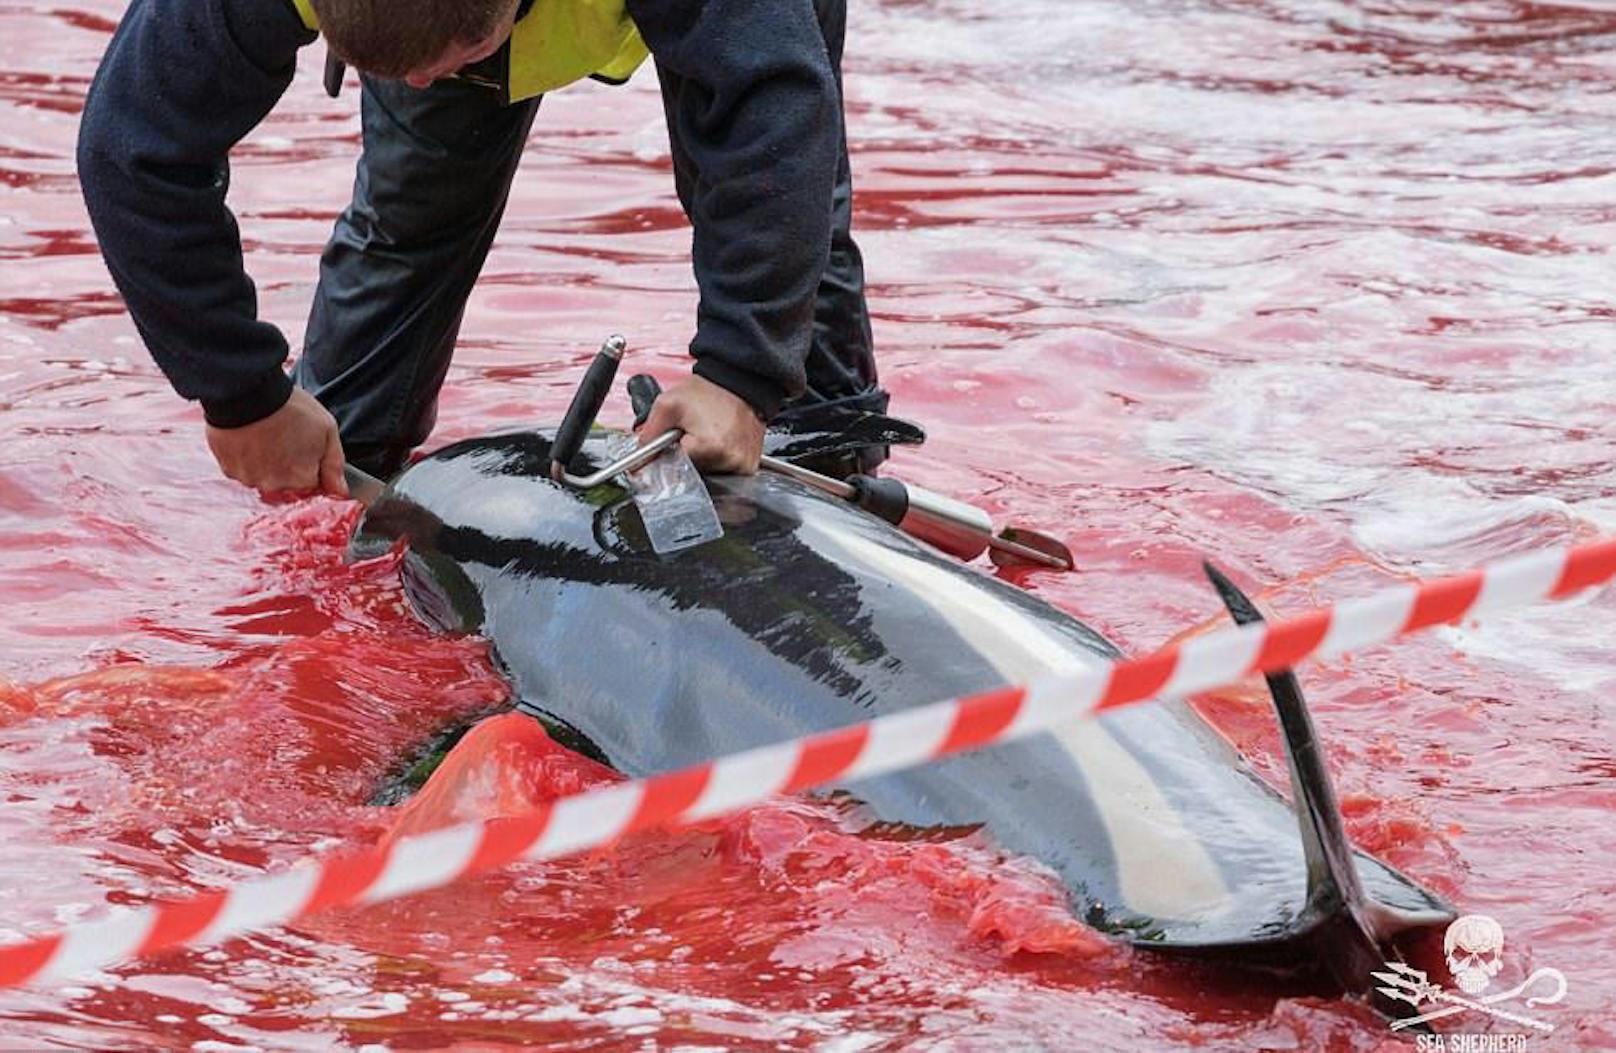 Grindadráp, die Jagd auf Grindwale, hat auf den Färöer-Inseln eine lange Tradition.  Sea Shepherd 